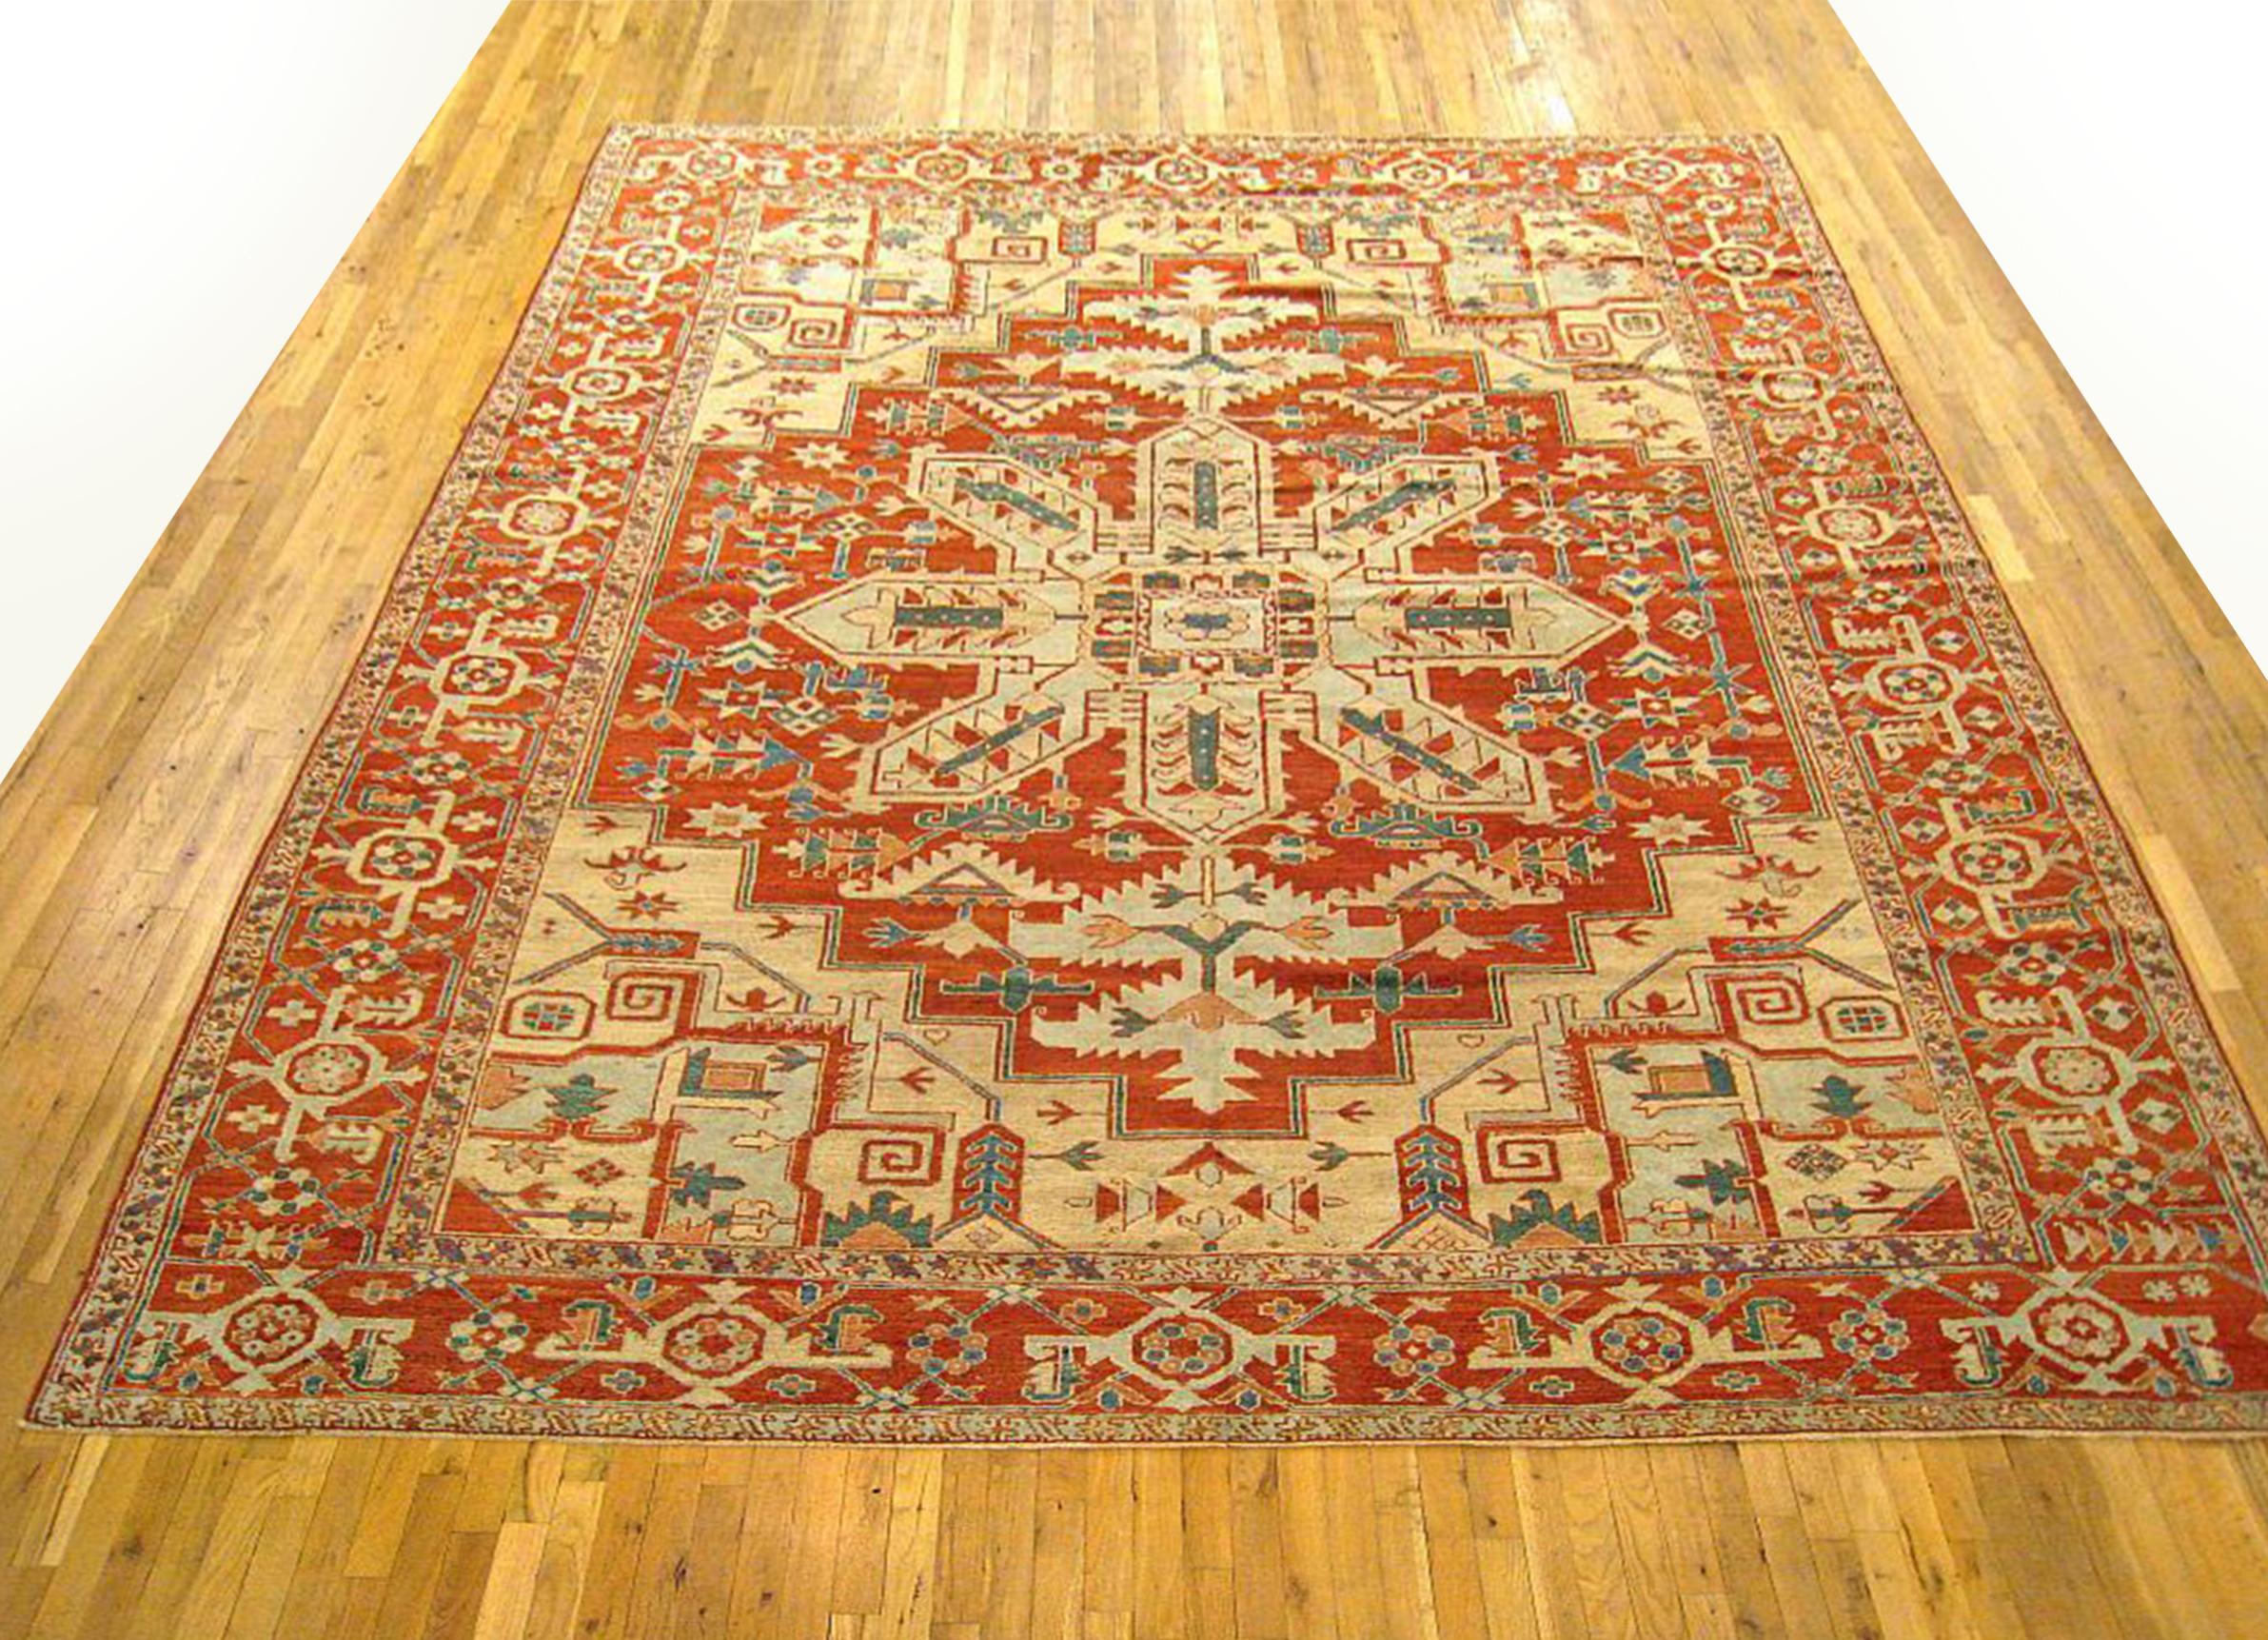 Antique Persian Serapi Oriental Rug, in Room size

An antique Persian Serapi oriental rug, size 12'4